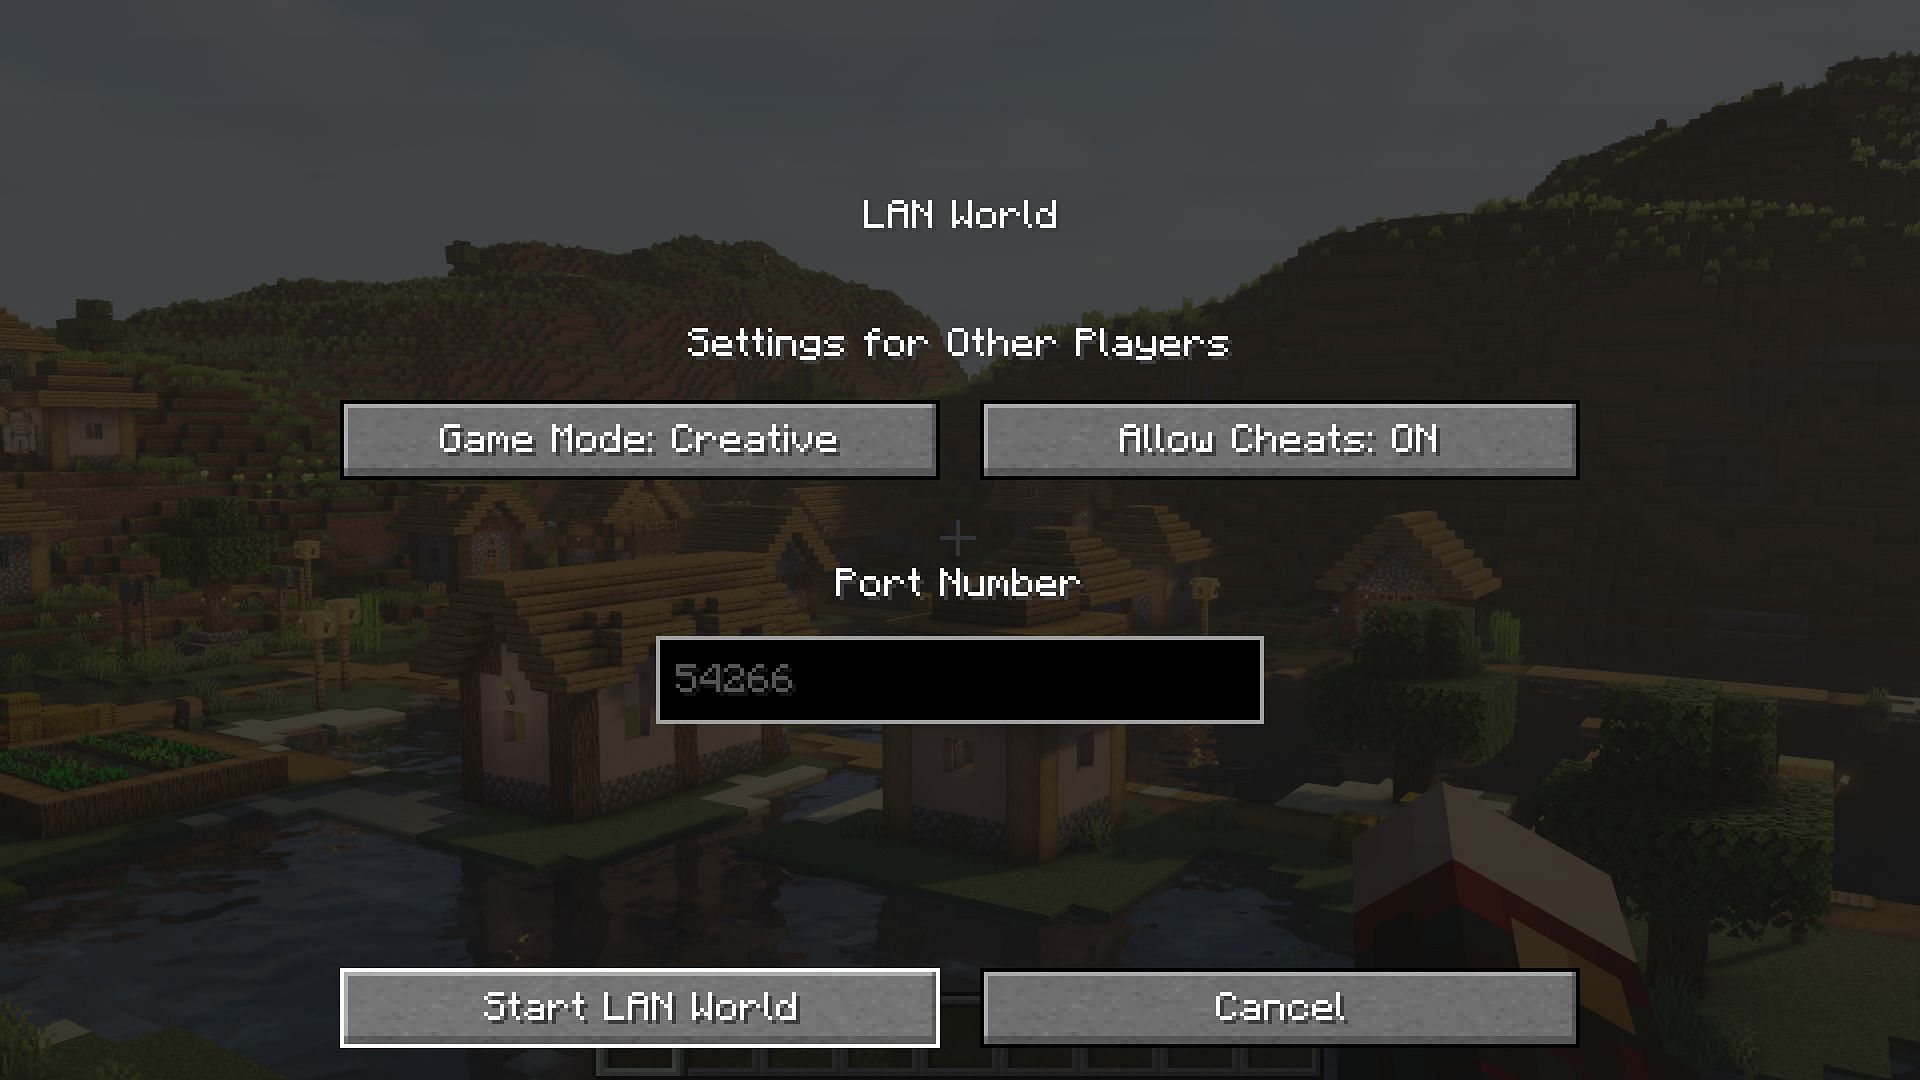 A temporary LAN world can have cheats enabled (Image via Mojang)